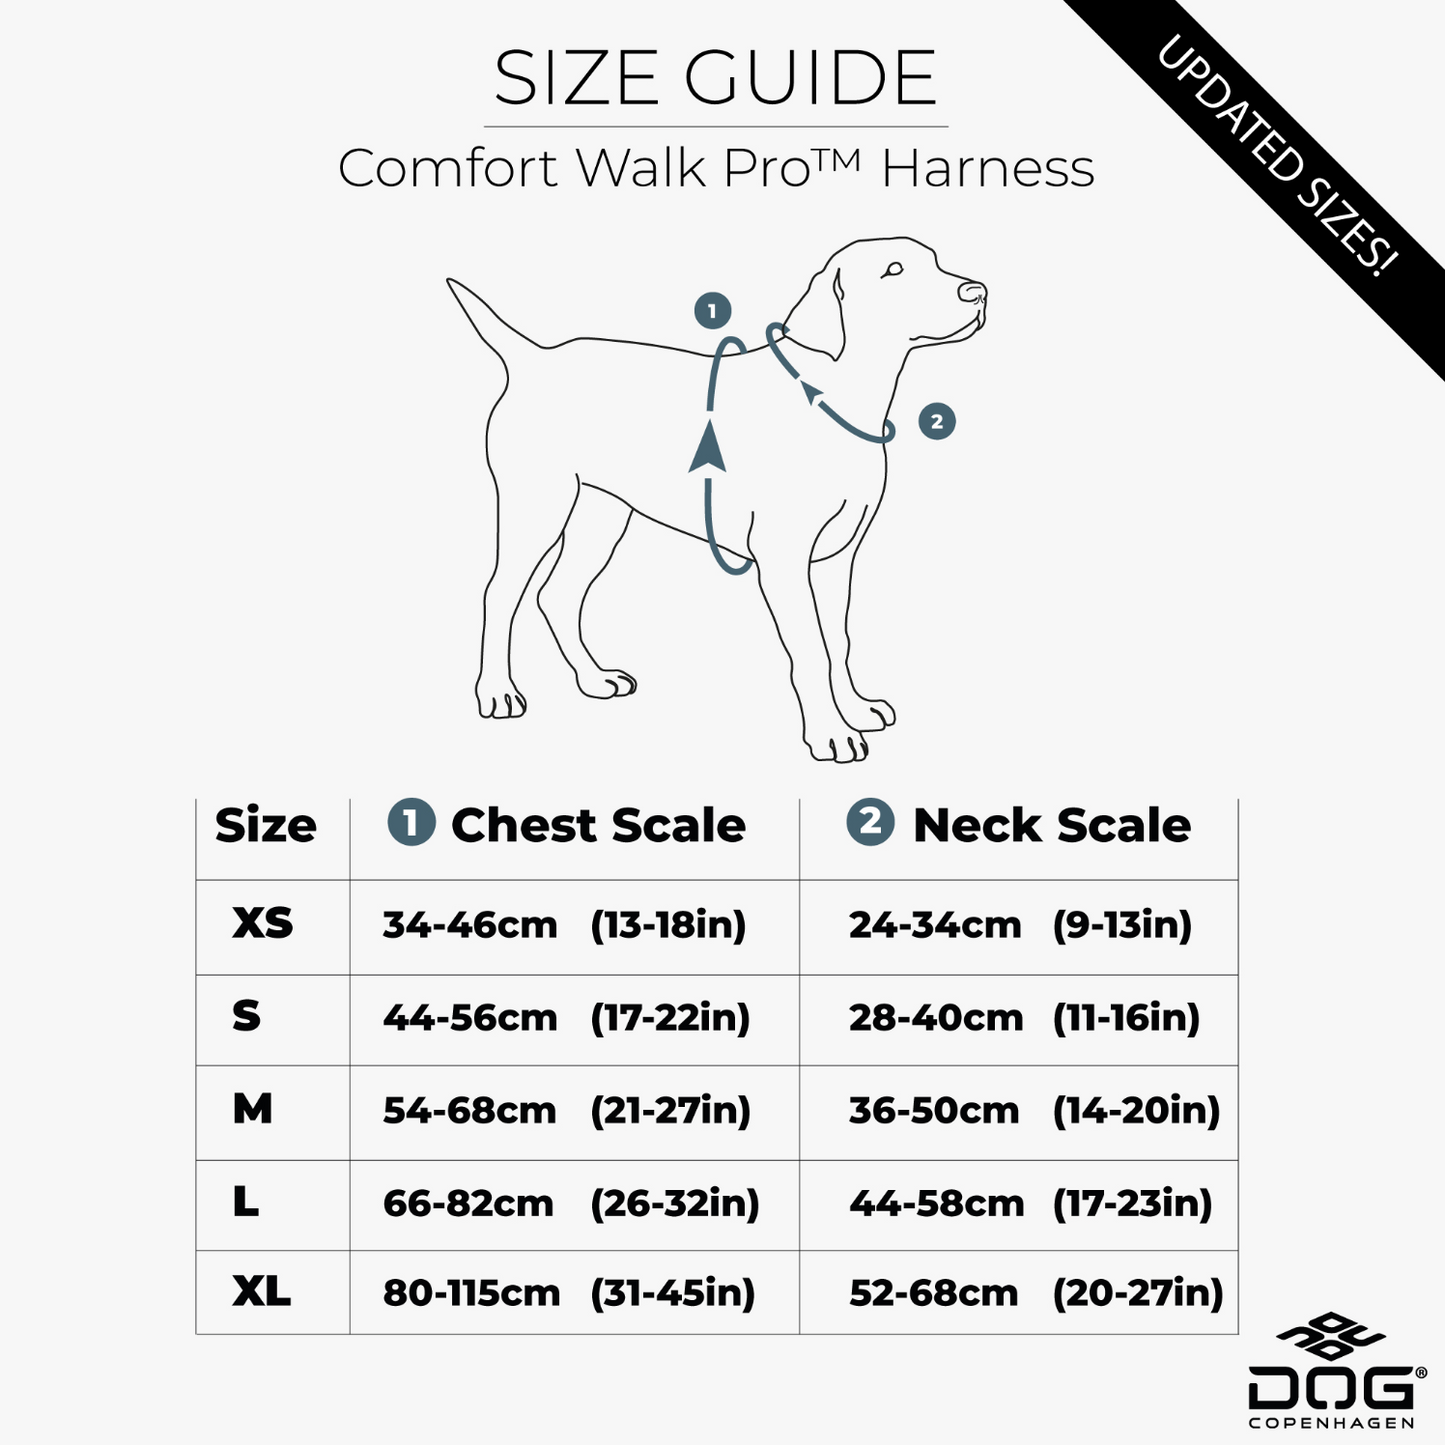 Dog Copenhagen Comfort Walk Pro Harness with Handle